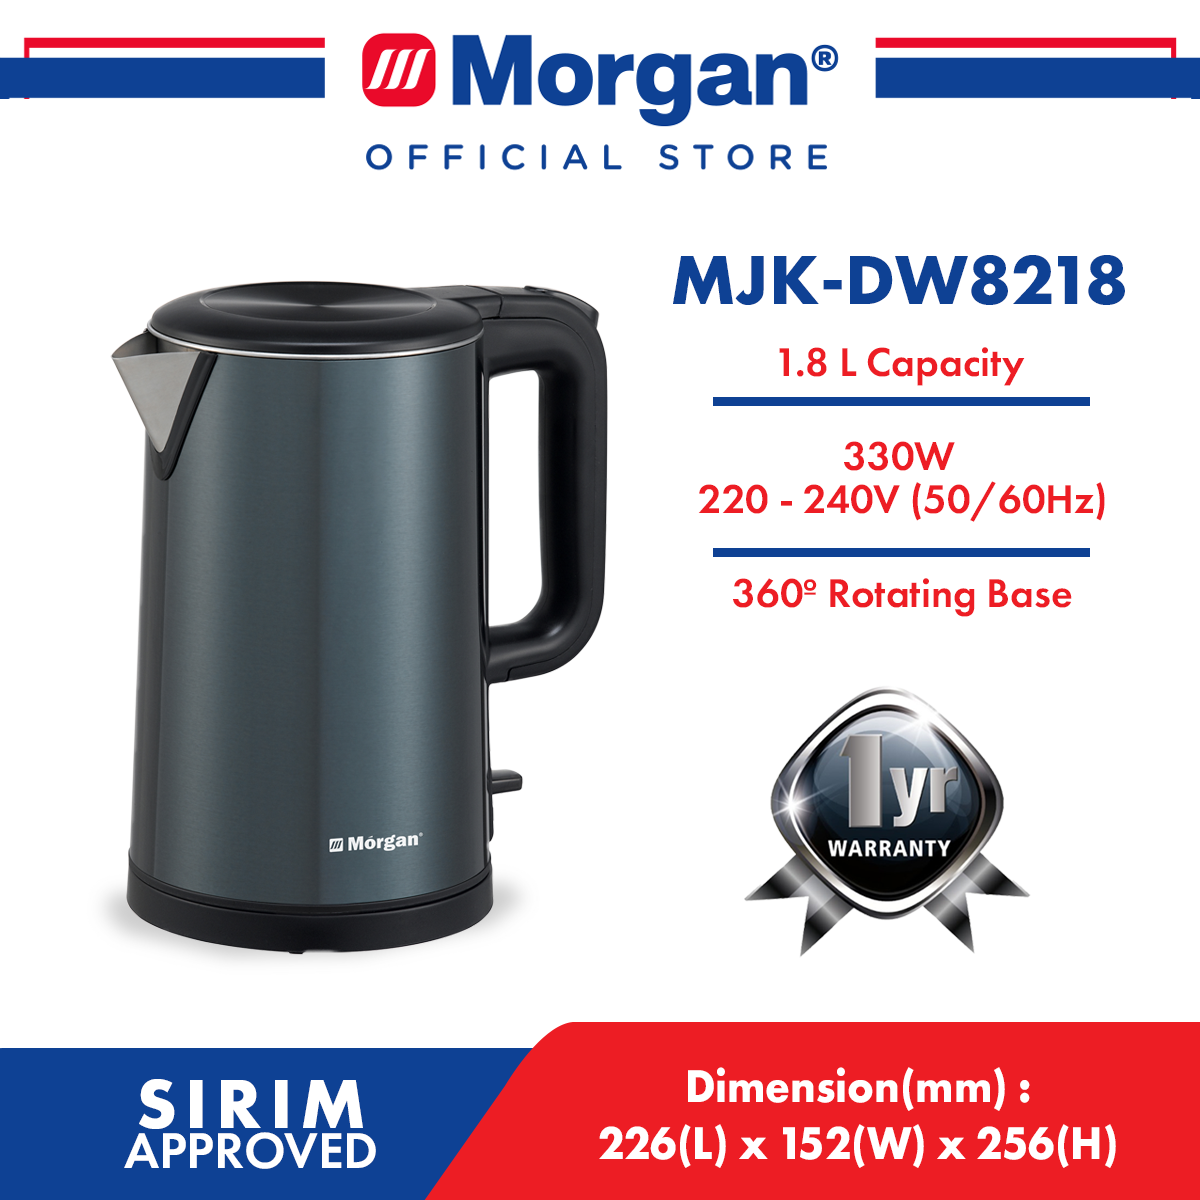 MORGAN MJK-DW8218 DOUBLE WALL STAINLESS STEEL JUG KETTLE 1.8L